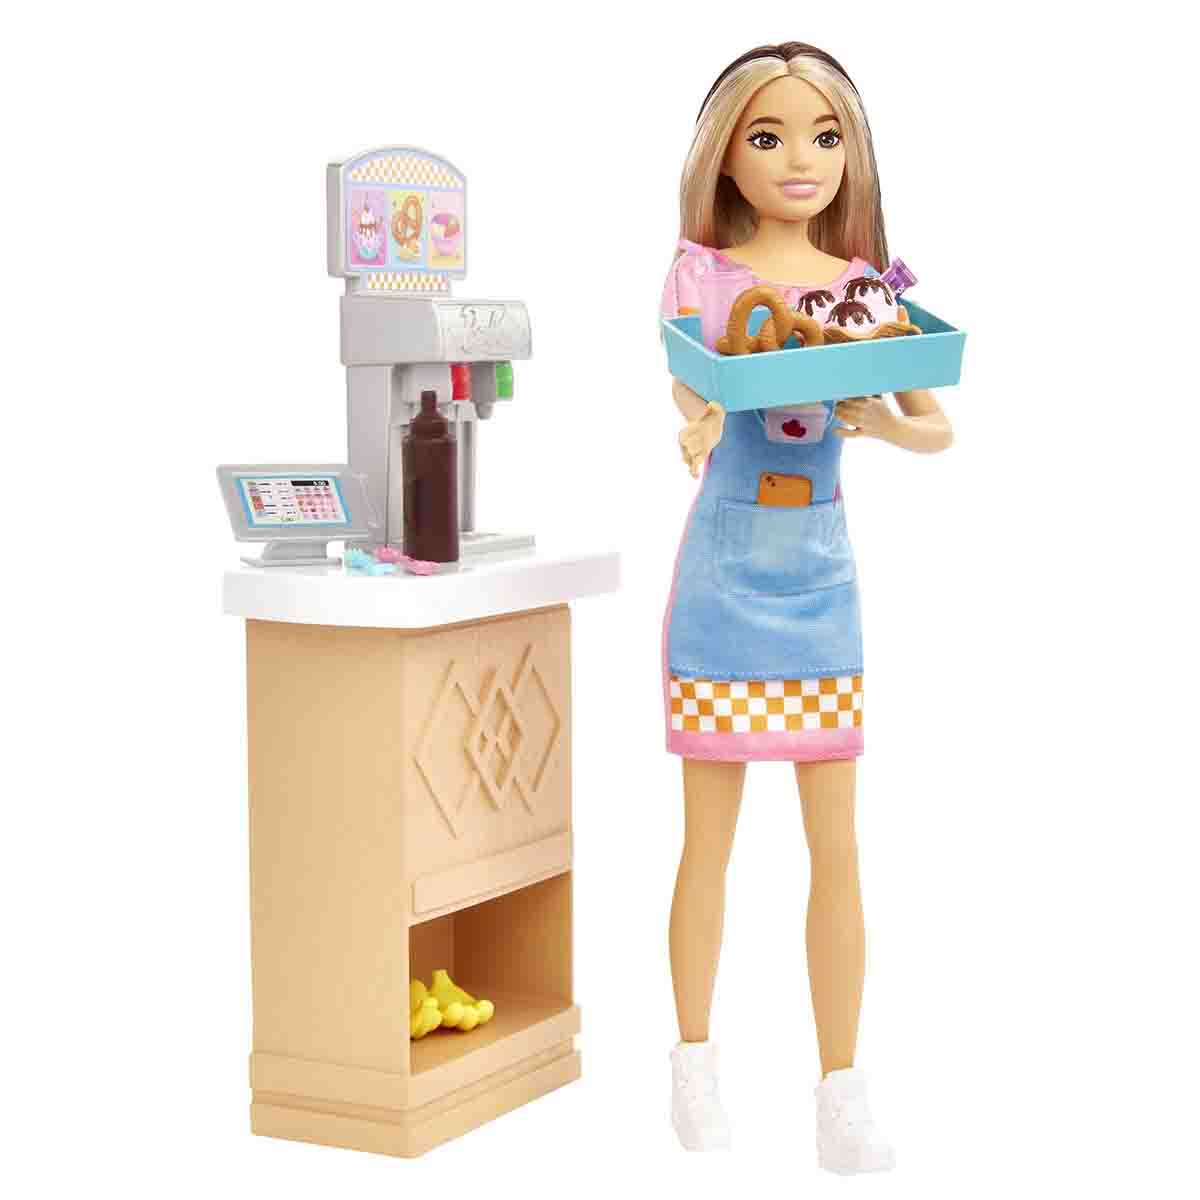 Barbie Skipper Doll &amp; Snack Bar